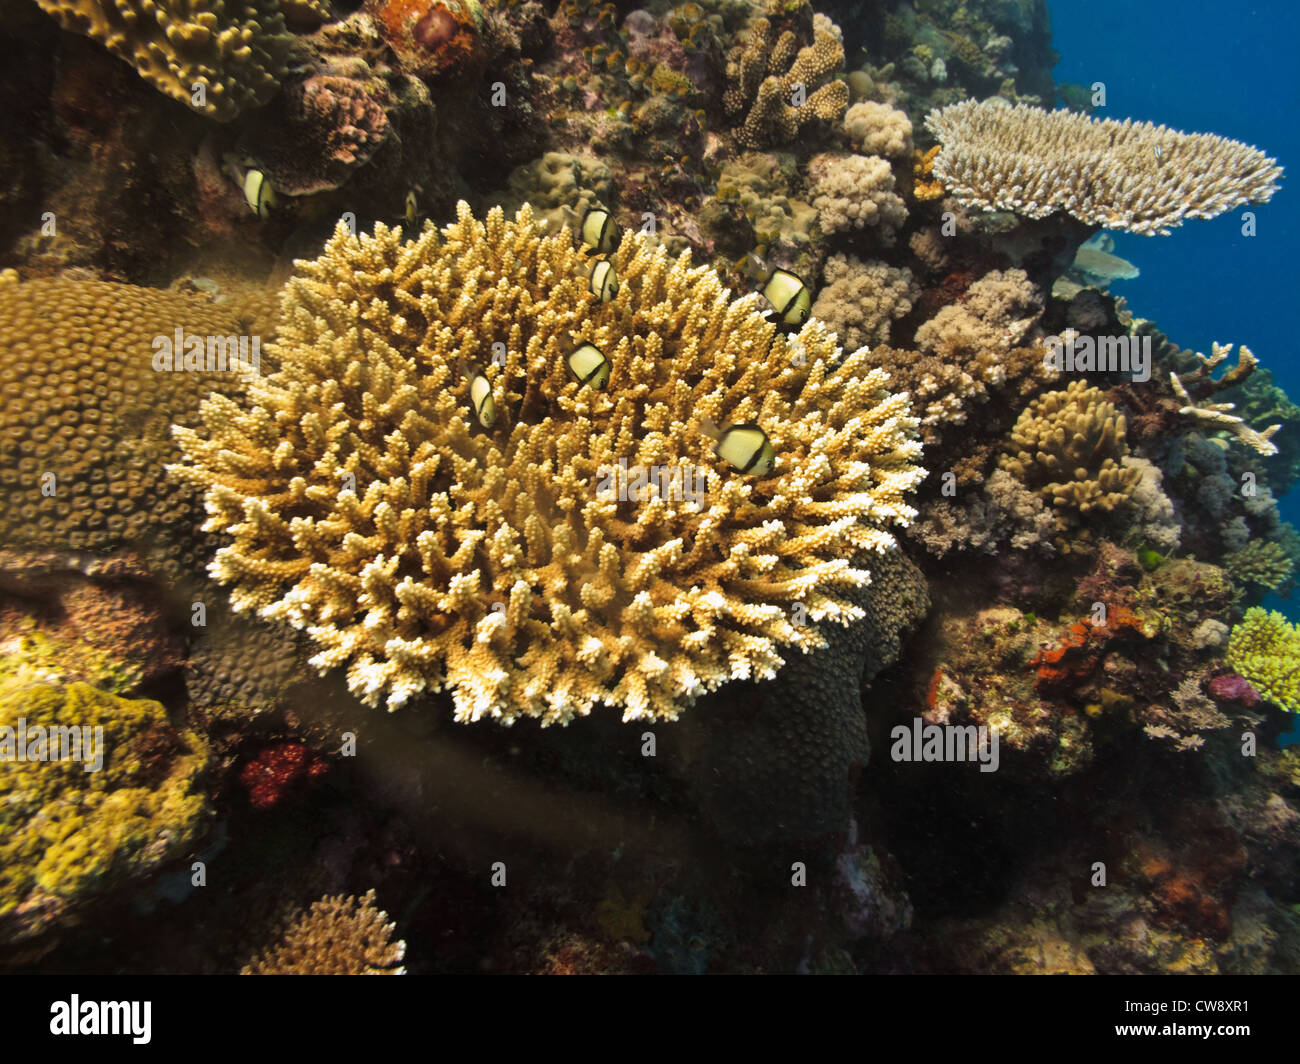 Unterwasseransicht von Stony coral Kolonien anthoza Hexacorallia scleractinia im Great Barrier Reef Marine Park Australien Stockfoto